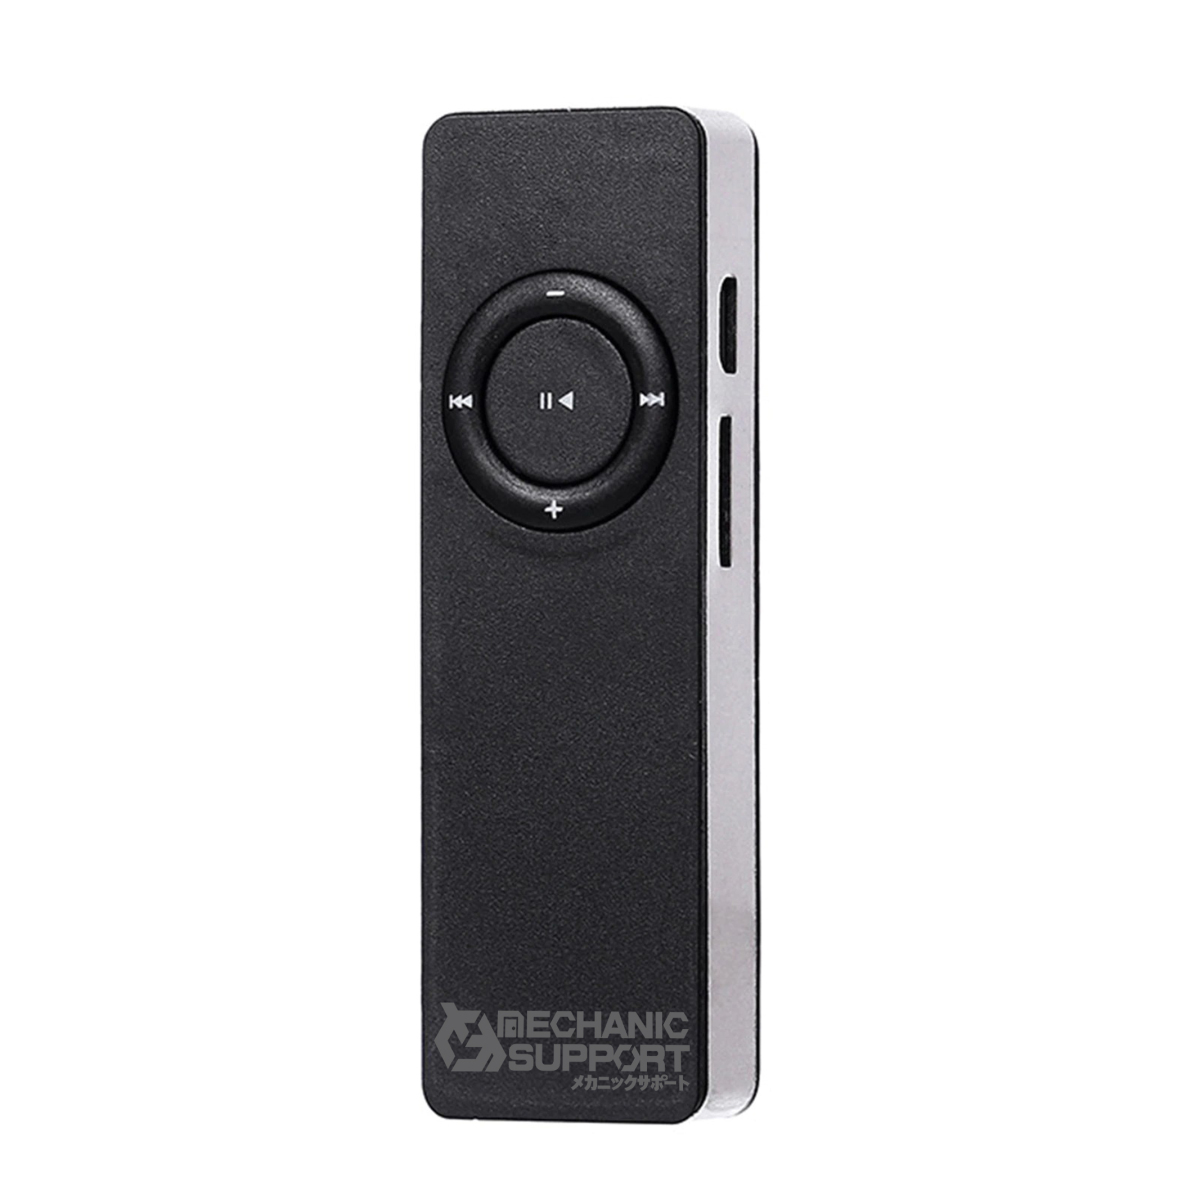 【ブラック】新品 長方形 スピーカー内蔵 MP3 音楽 プレイヤー SDカード式 メカニックサポート_画像10